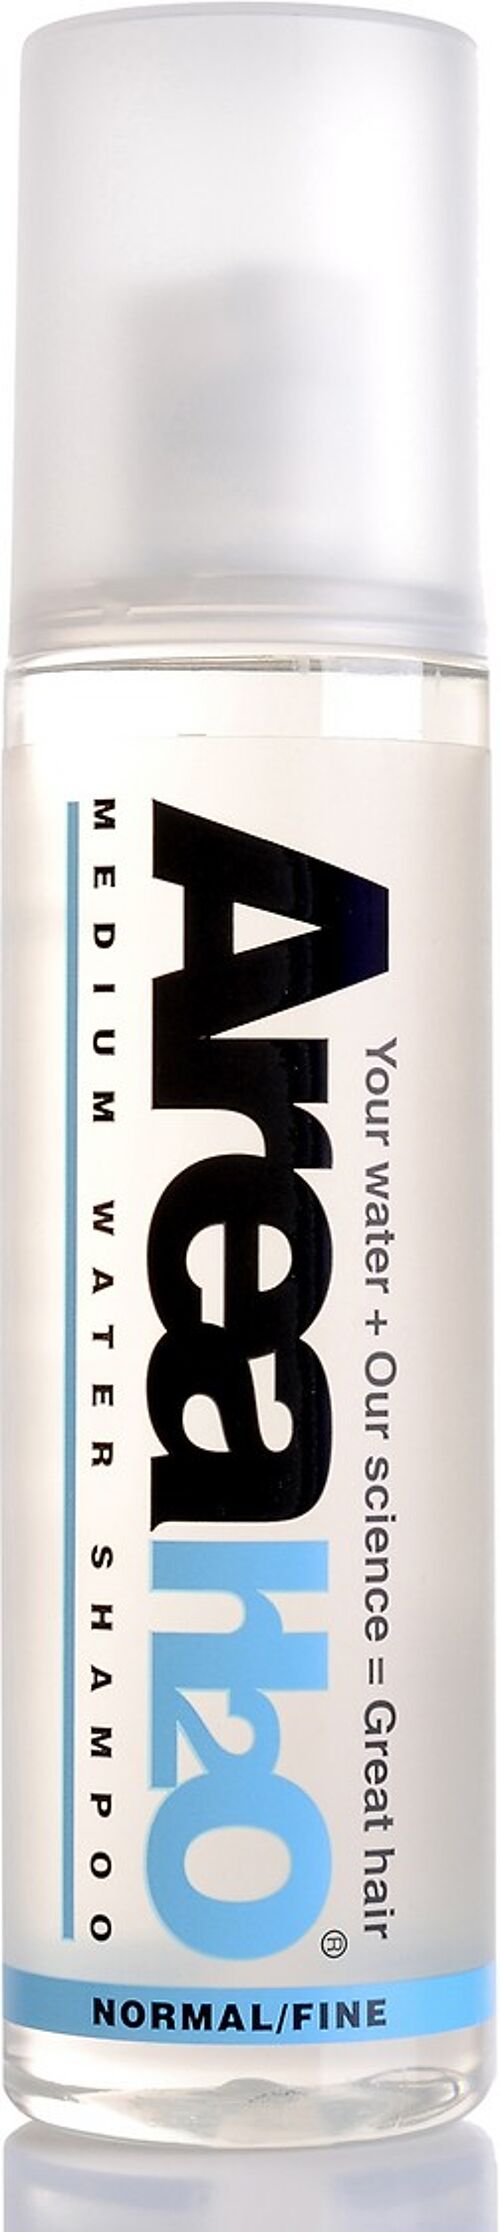 Medium Water Shampoo 250ml | Normal Hair